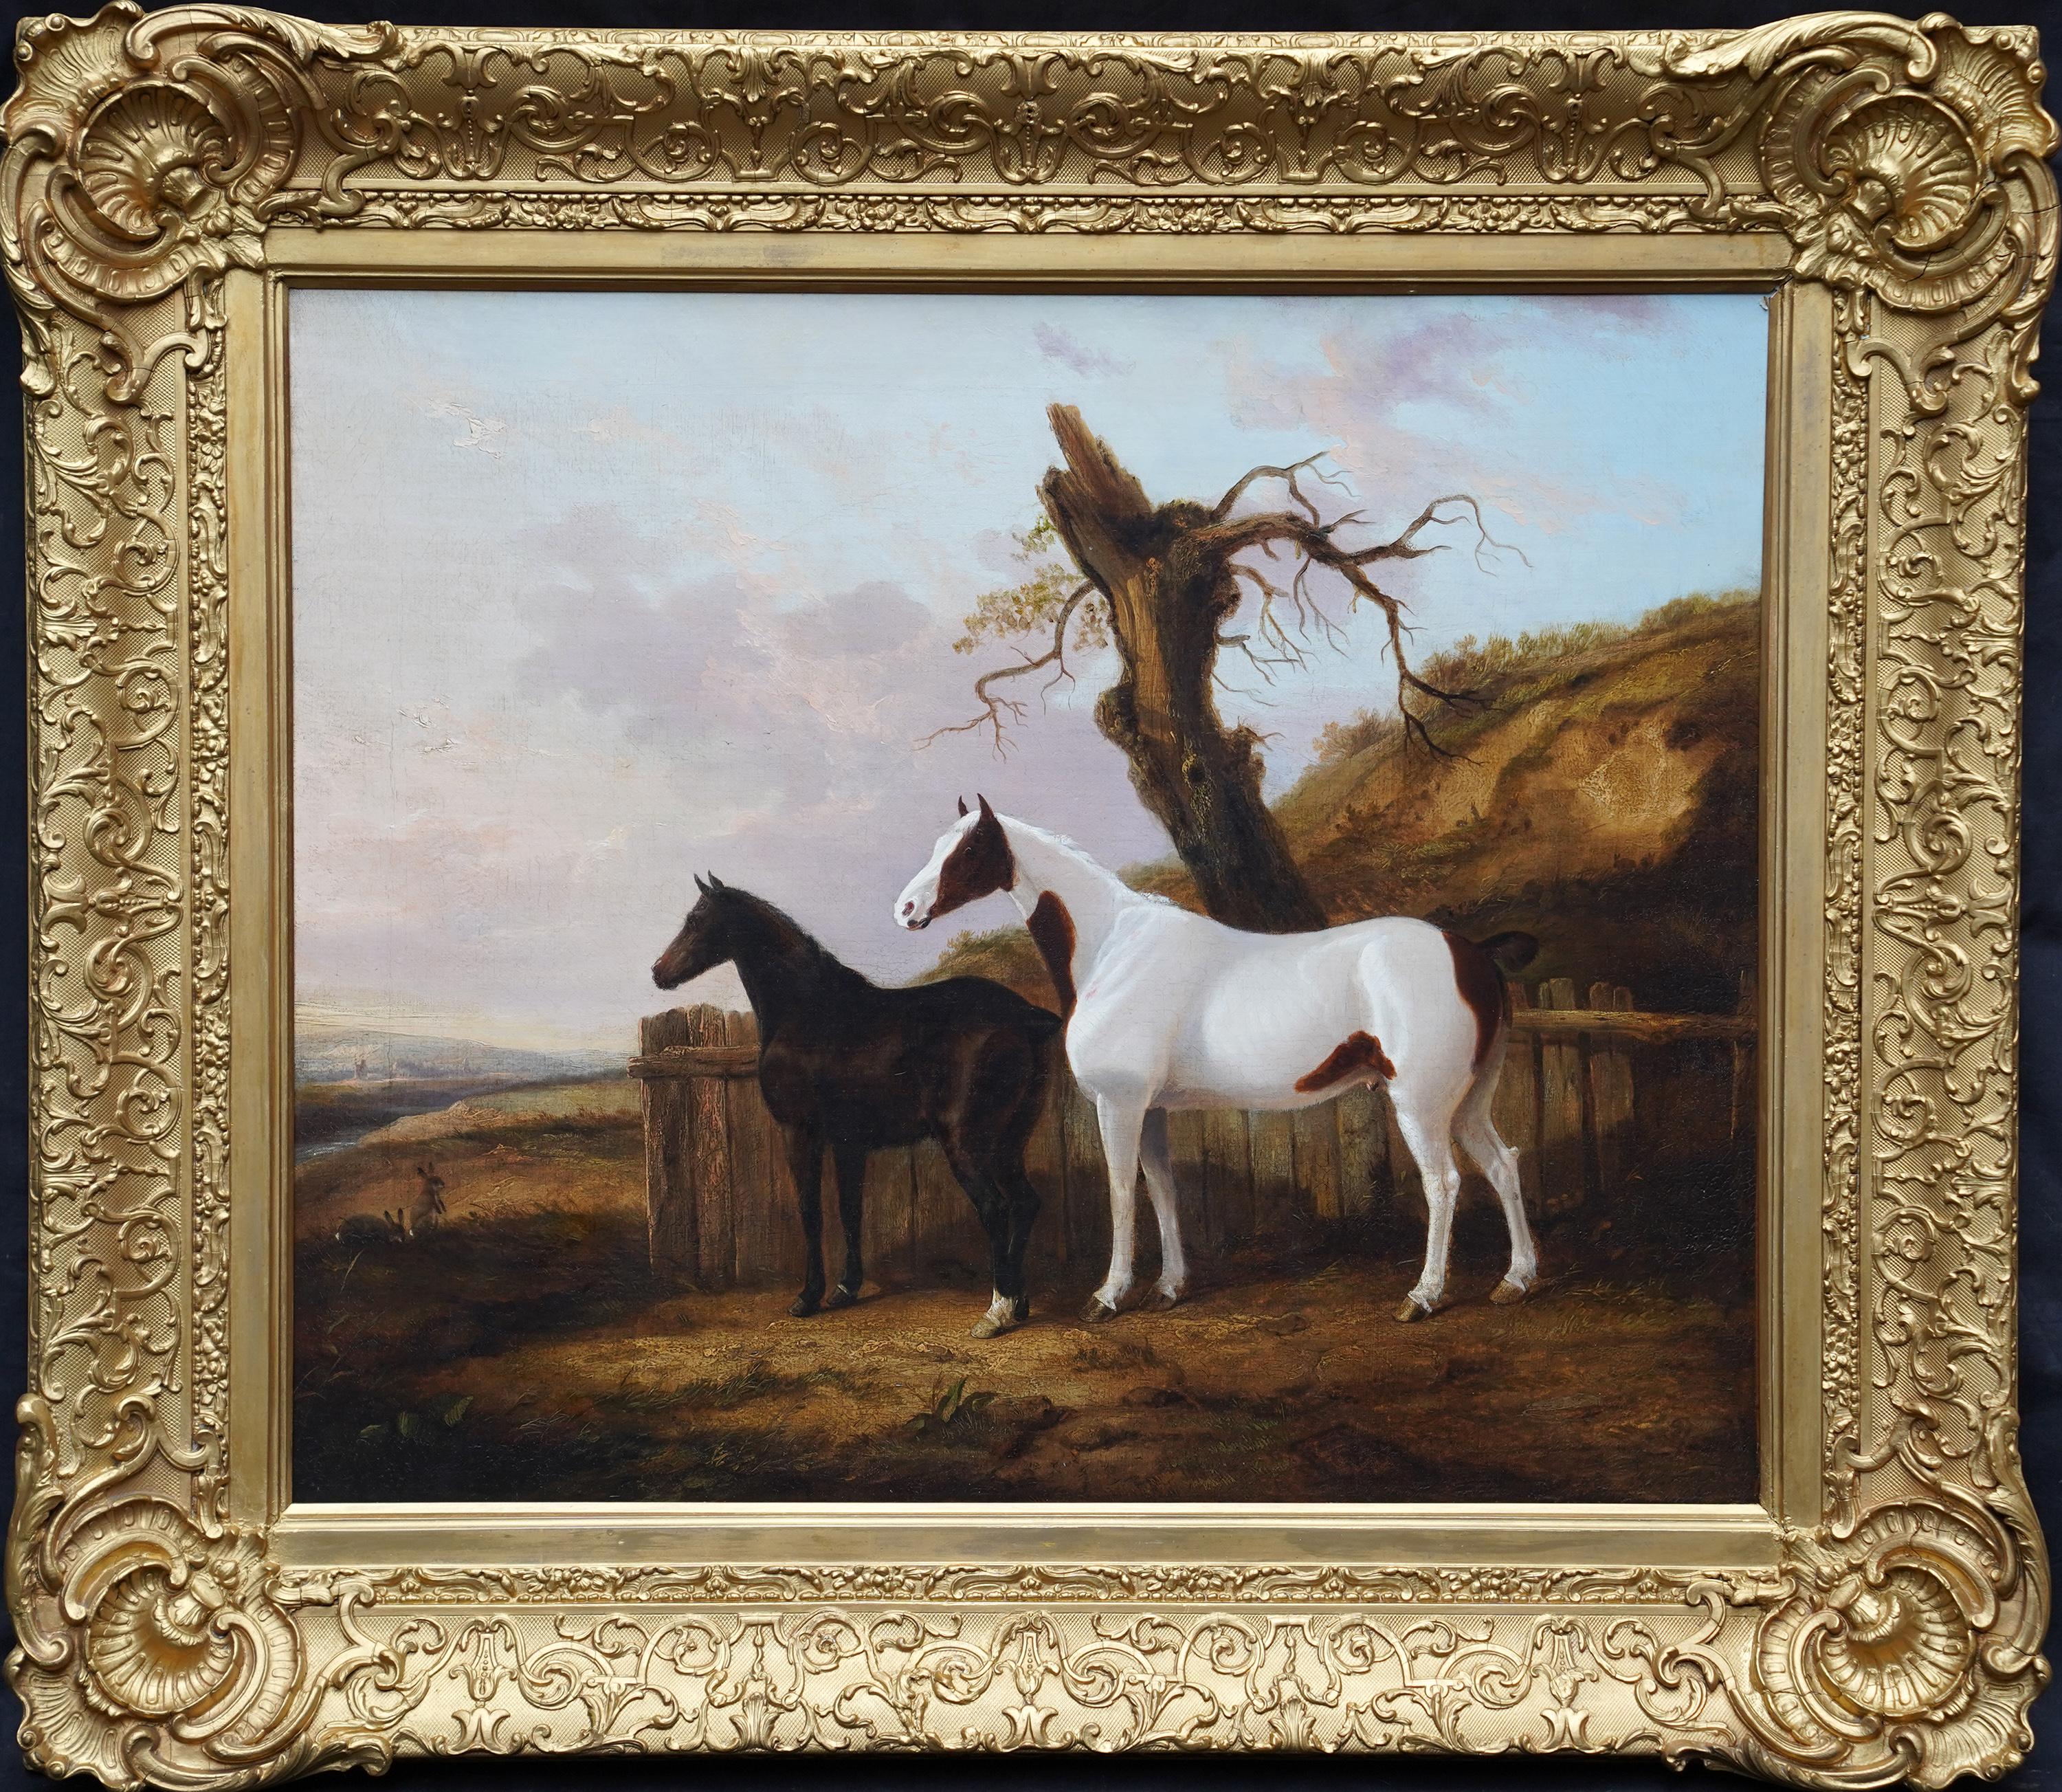 Landscape Painting George Cole - Portrait de deux chevaux dans un paysage - Peinture à l'huile d'art équestre britannique du 19e siècle